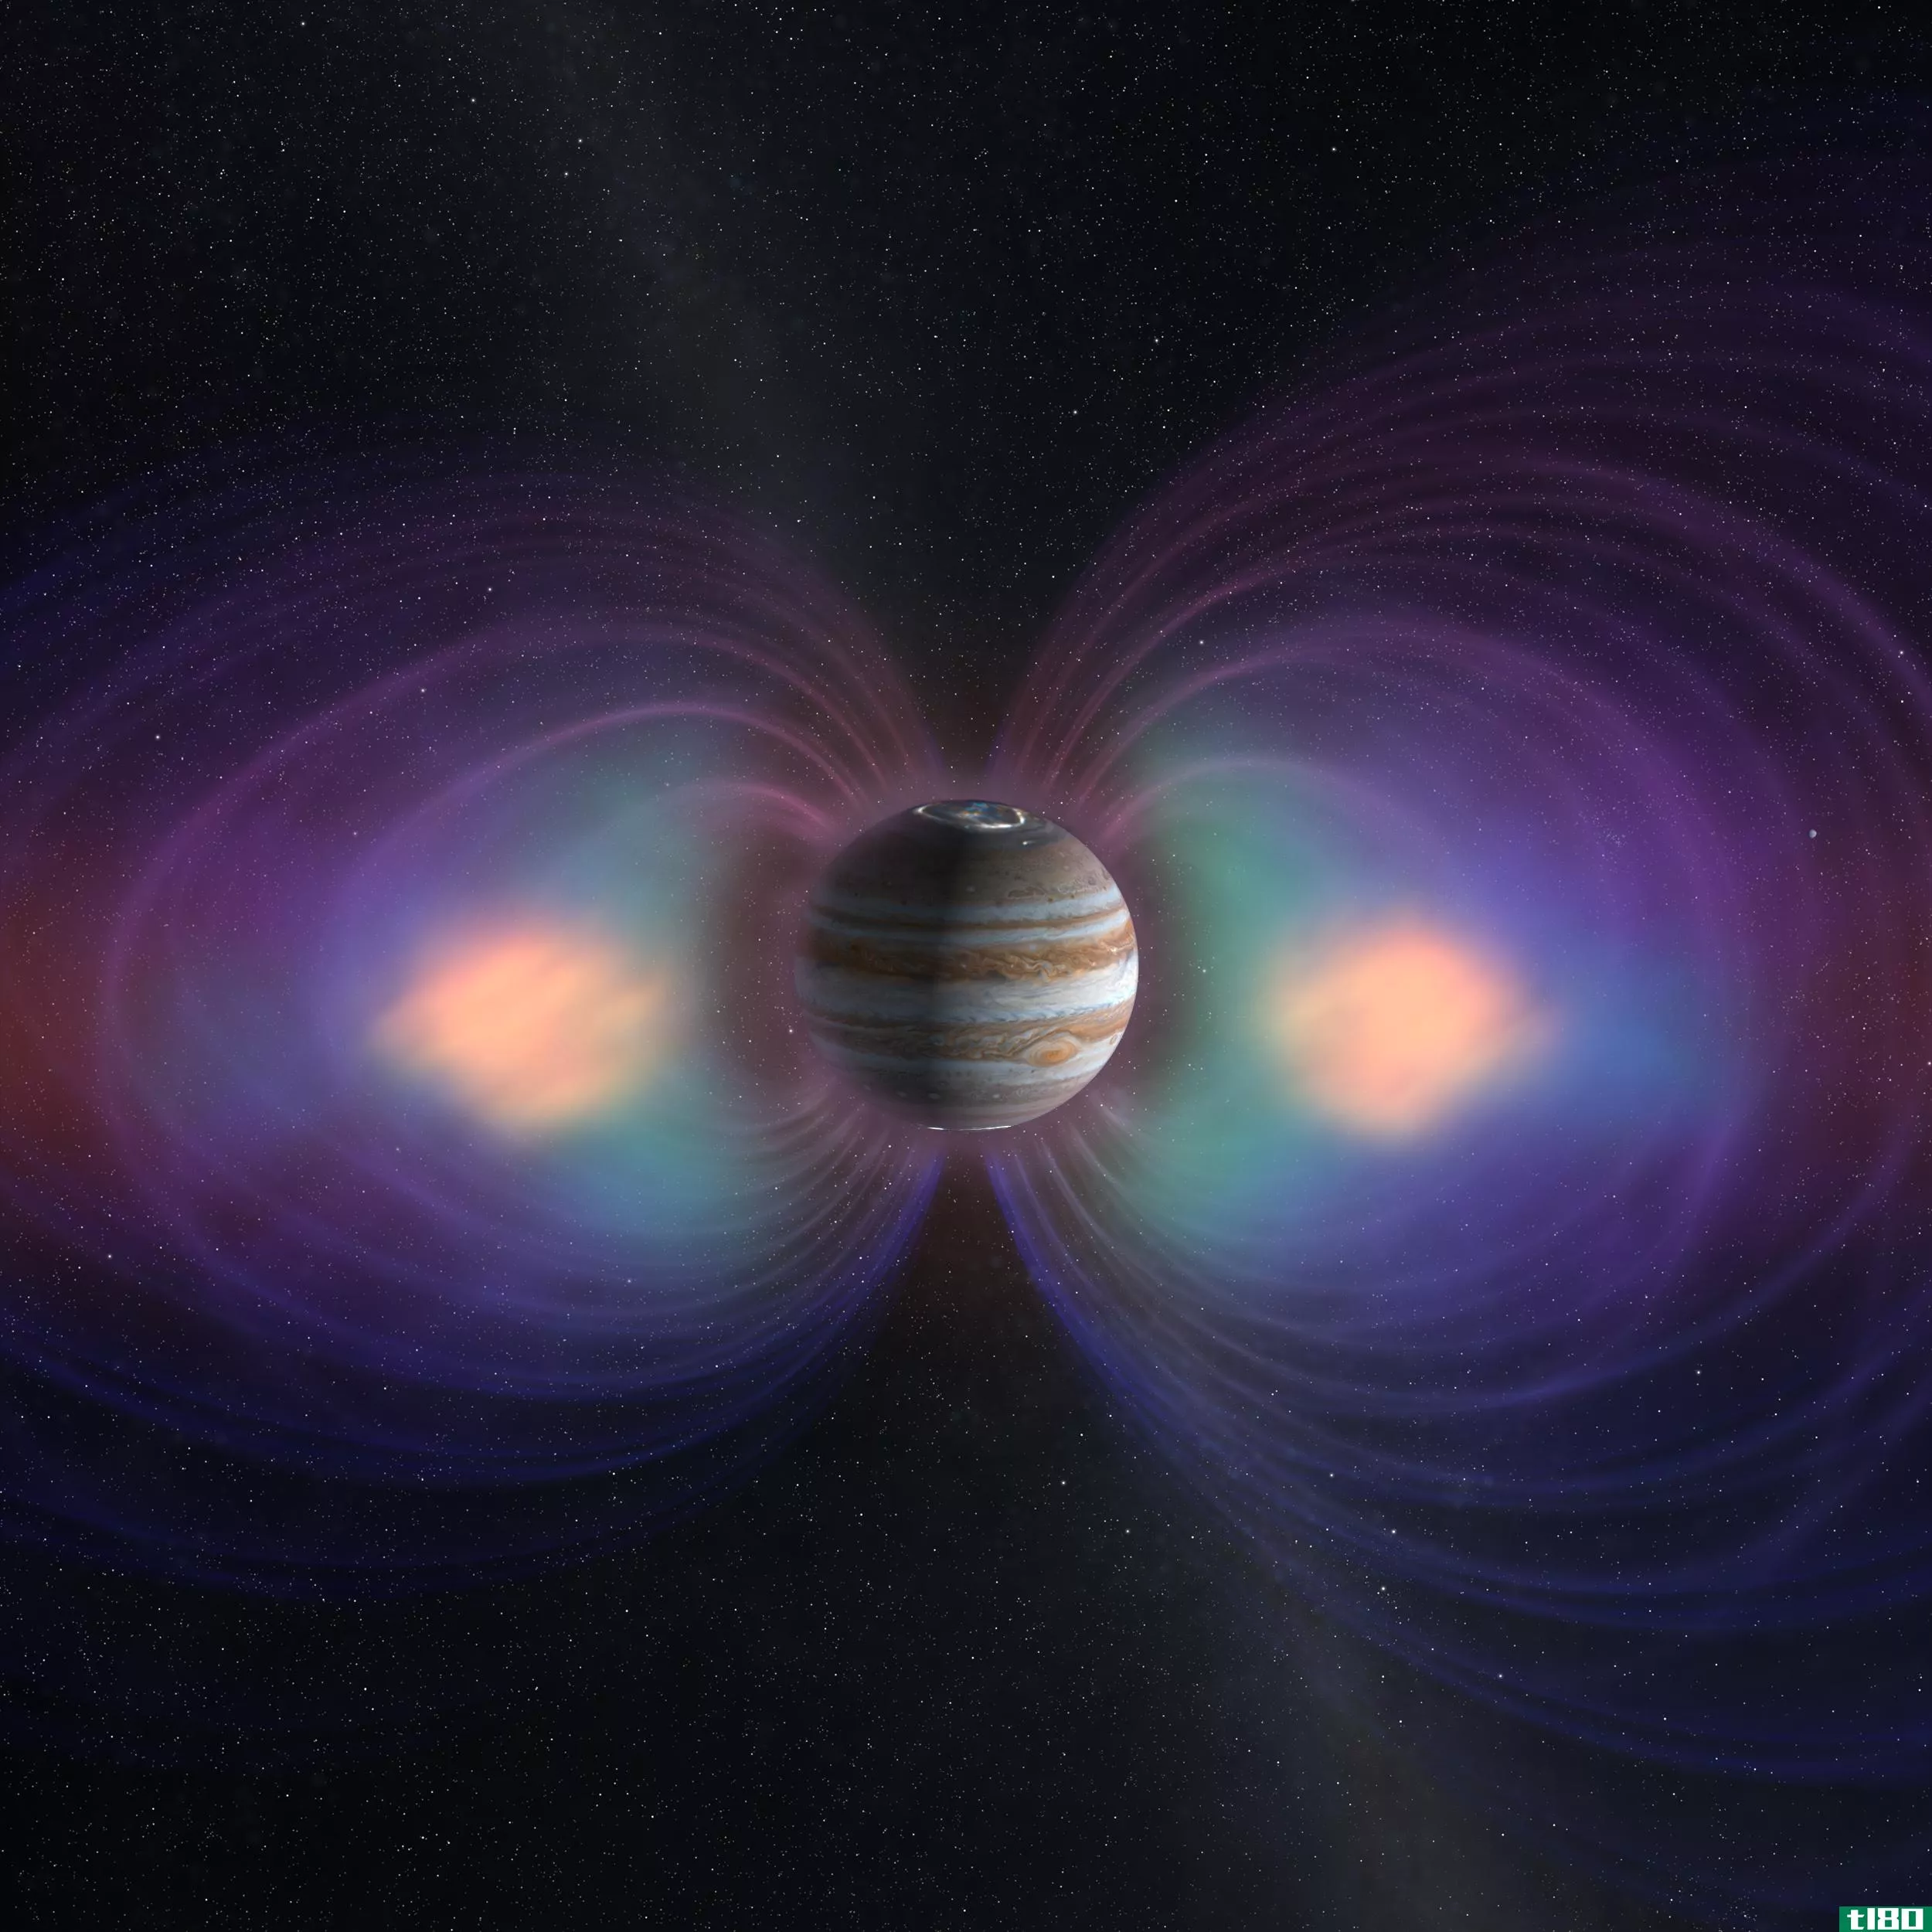 聆听美国宇航局朱诺号飞船穿越木星磁场的声音